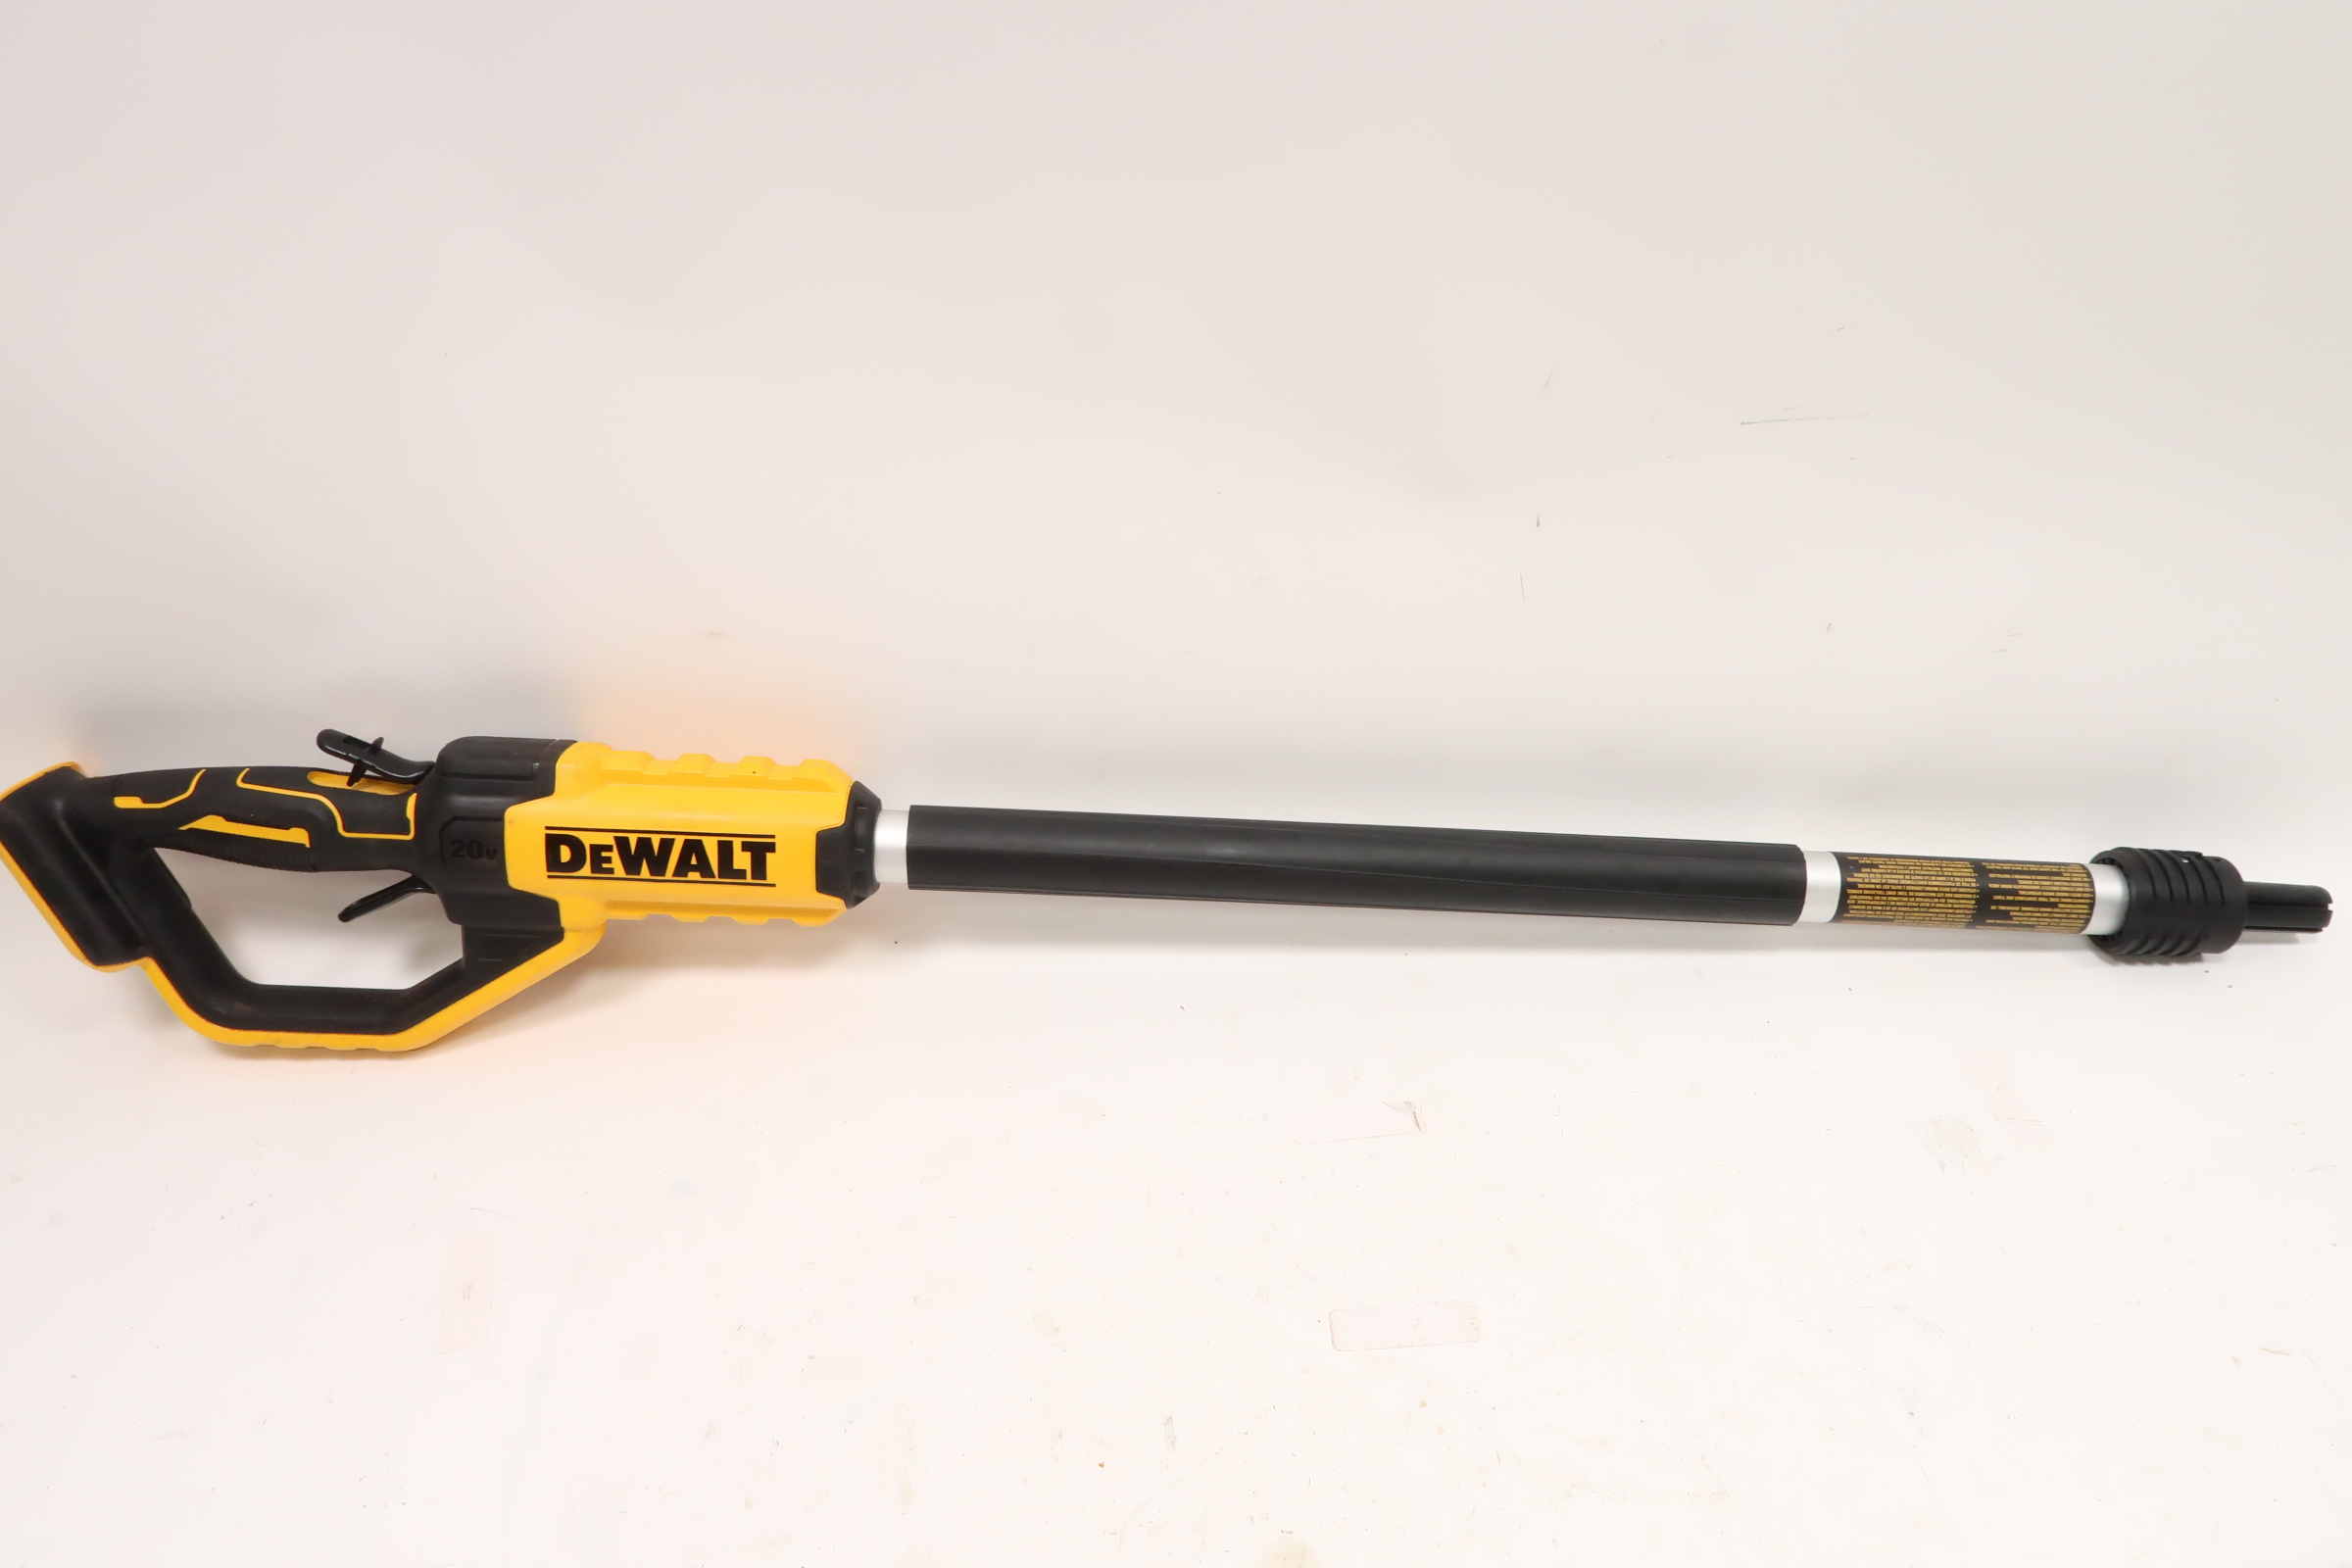 Dewalt DCPS620M1 20V MAX XR Pole Saw, 15-Foot Reach